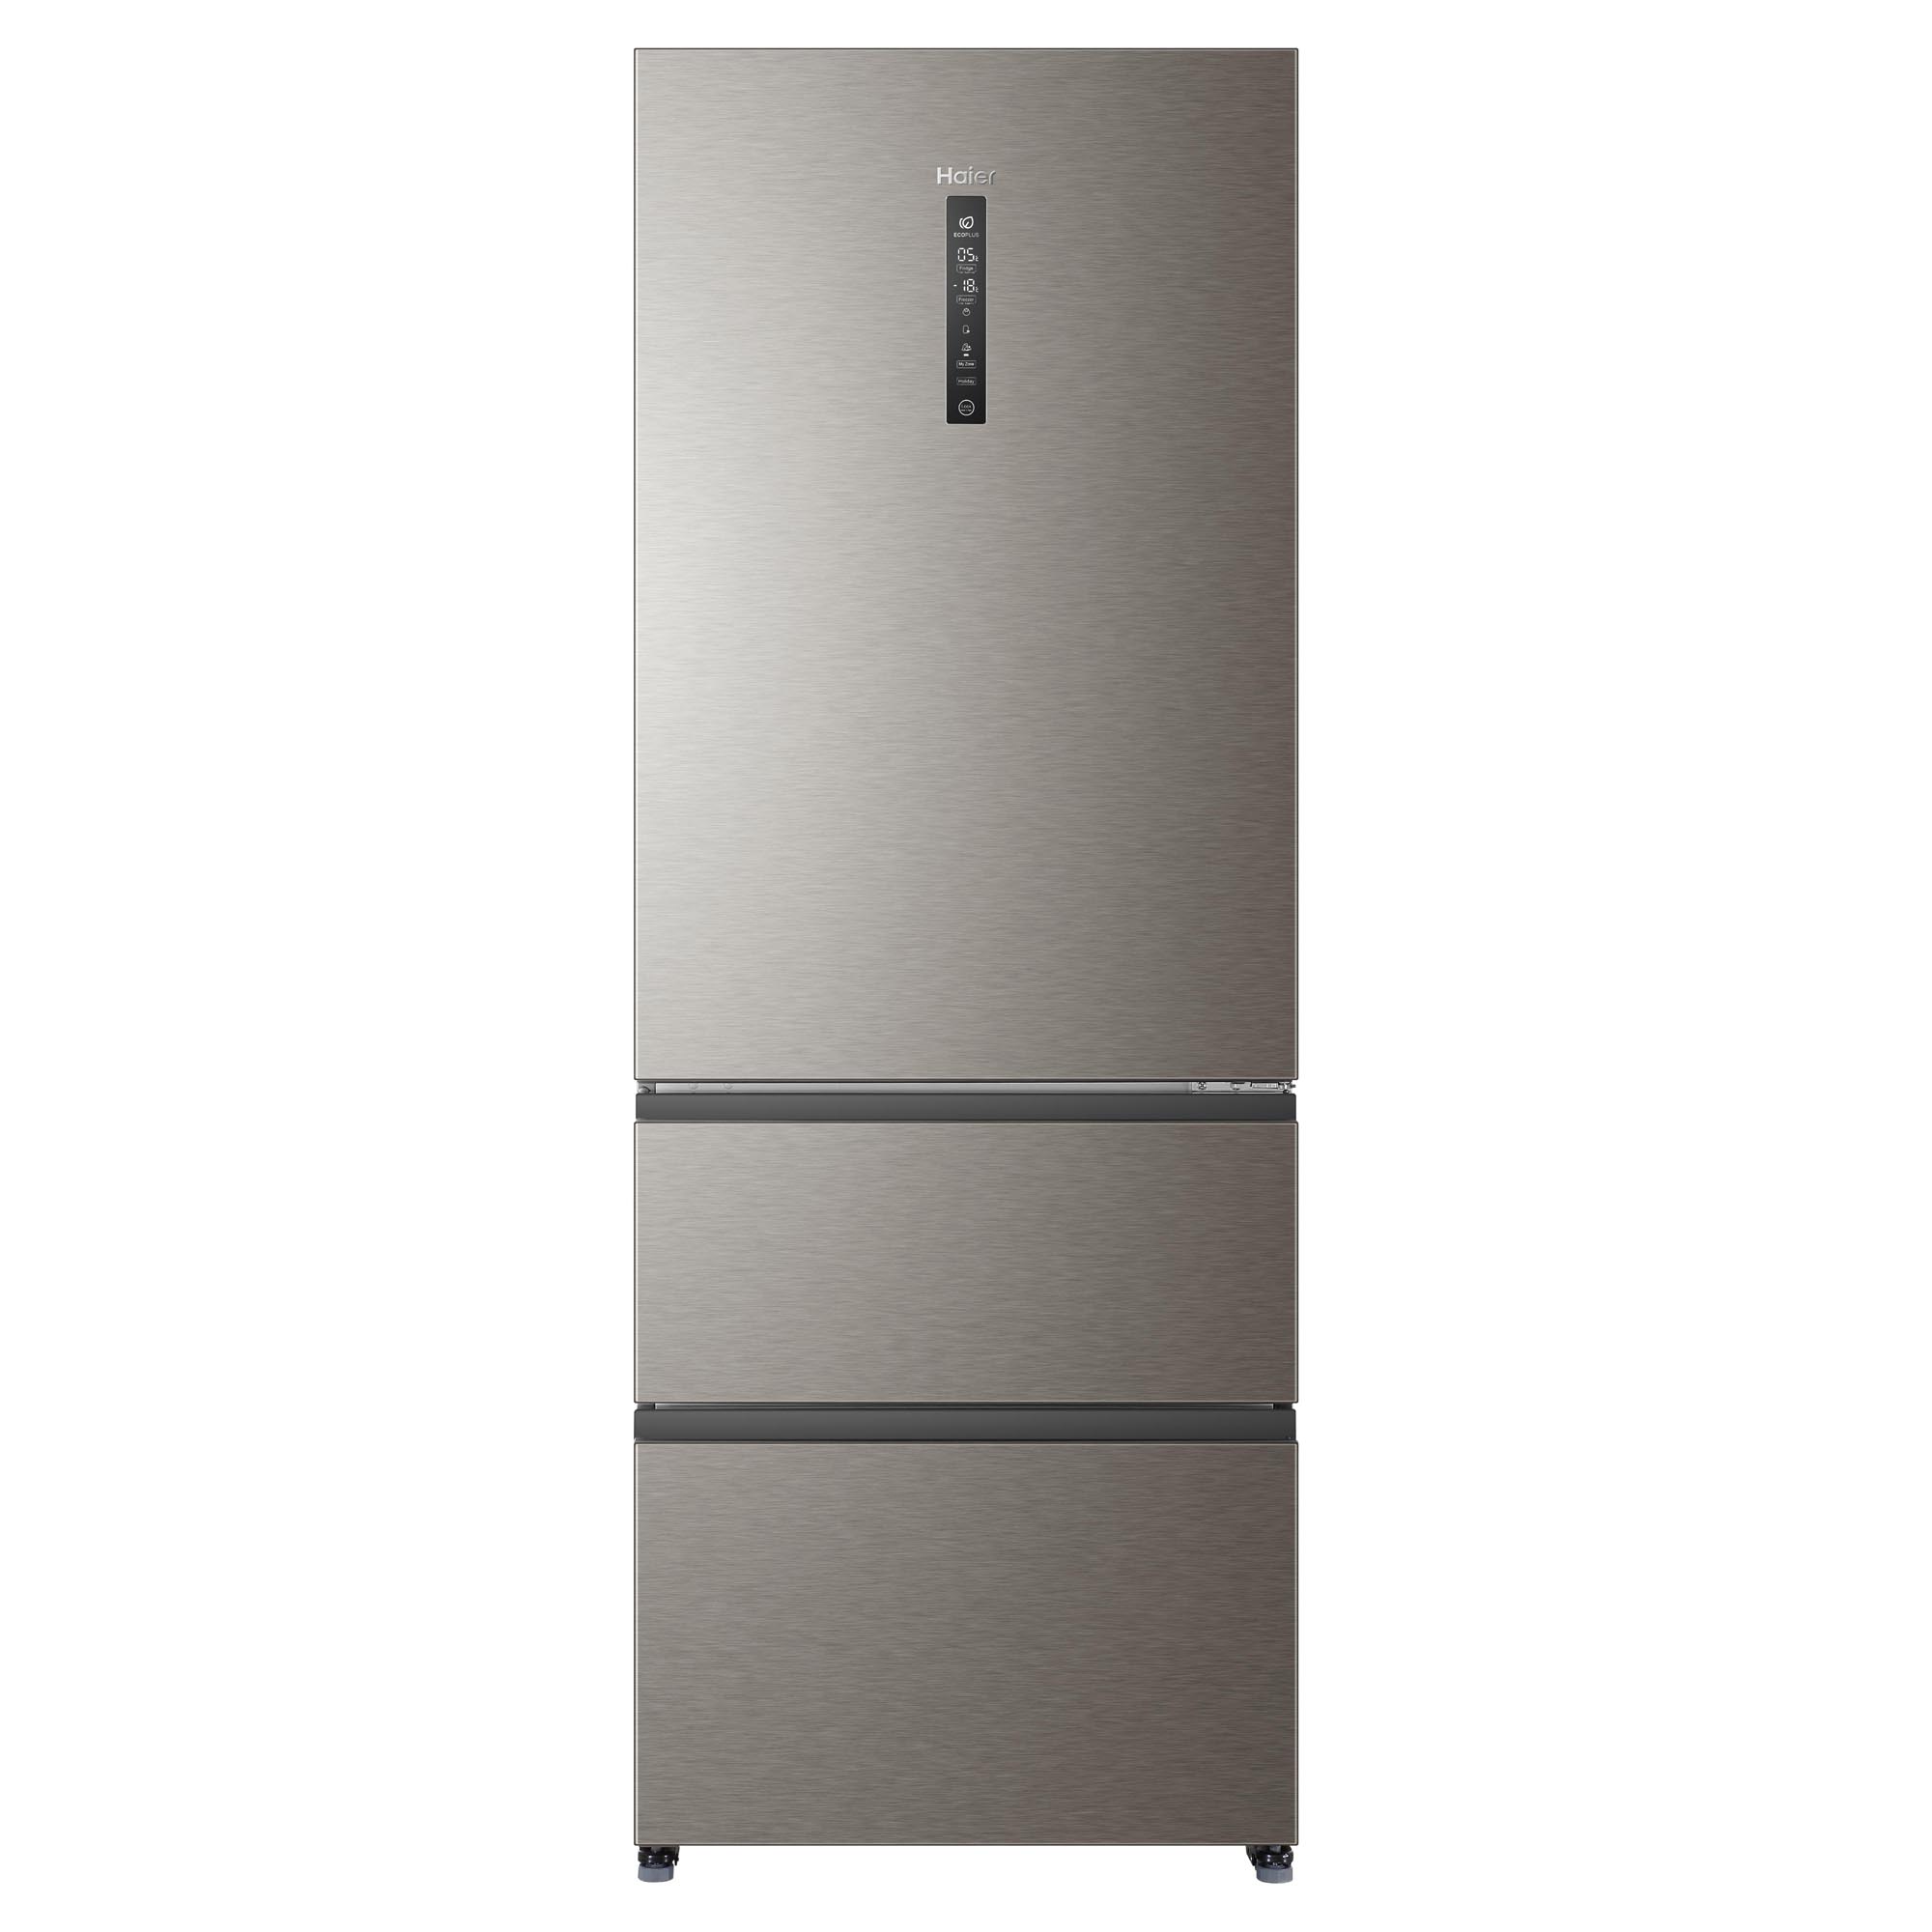 Холодильник Haier a4f742cmg. Холодильник Haier a4f742cmg, серебристый. Холодильник Хайер 742. Холодильник многодверный Haier a4f742cmg. Производитель хайер отзывы